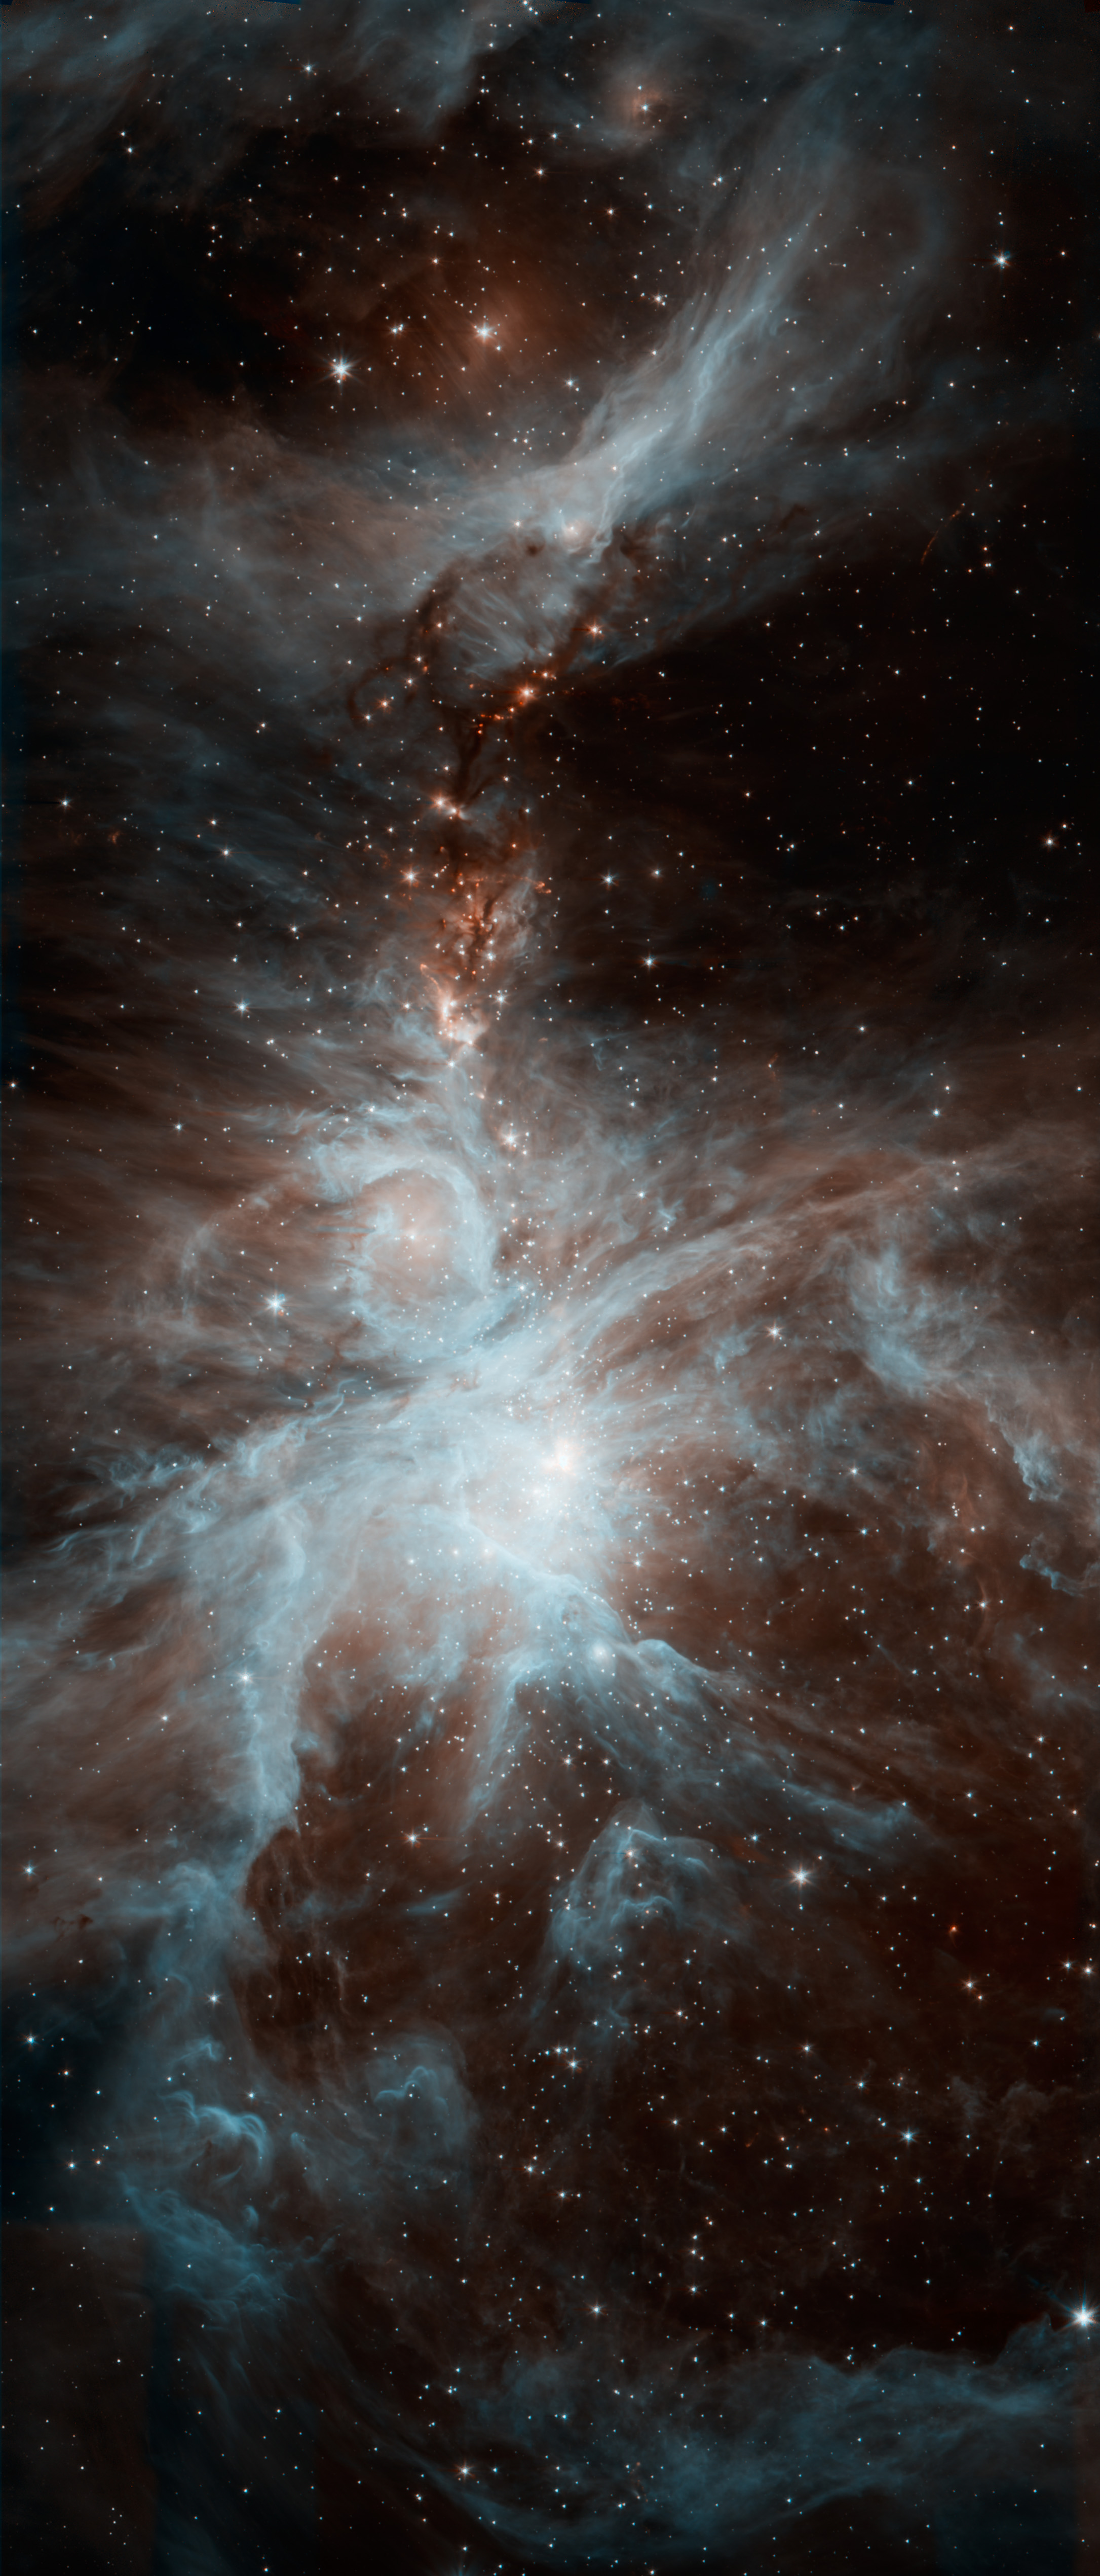 斯皮策望远镜拍摄的猎户座大星云